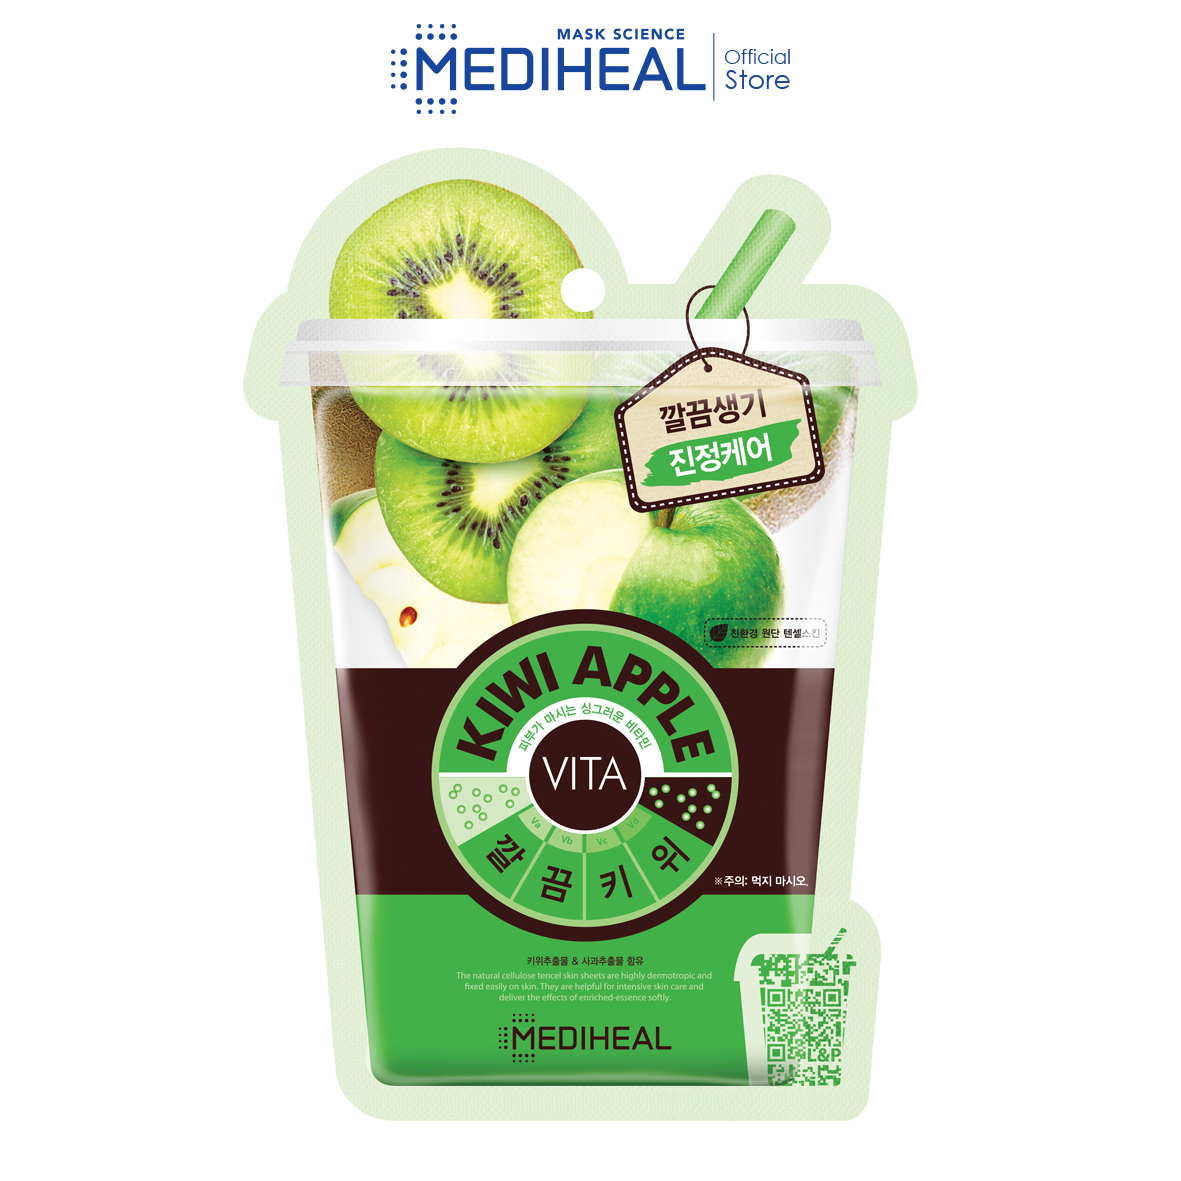 MEDIHEAL Kiwi Apple Vita Mask (10s)